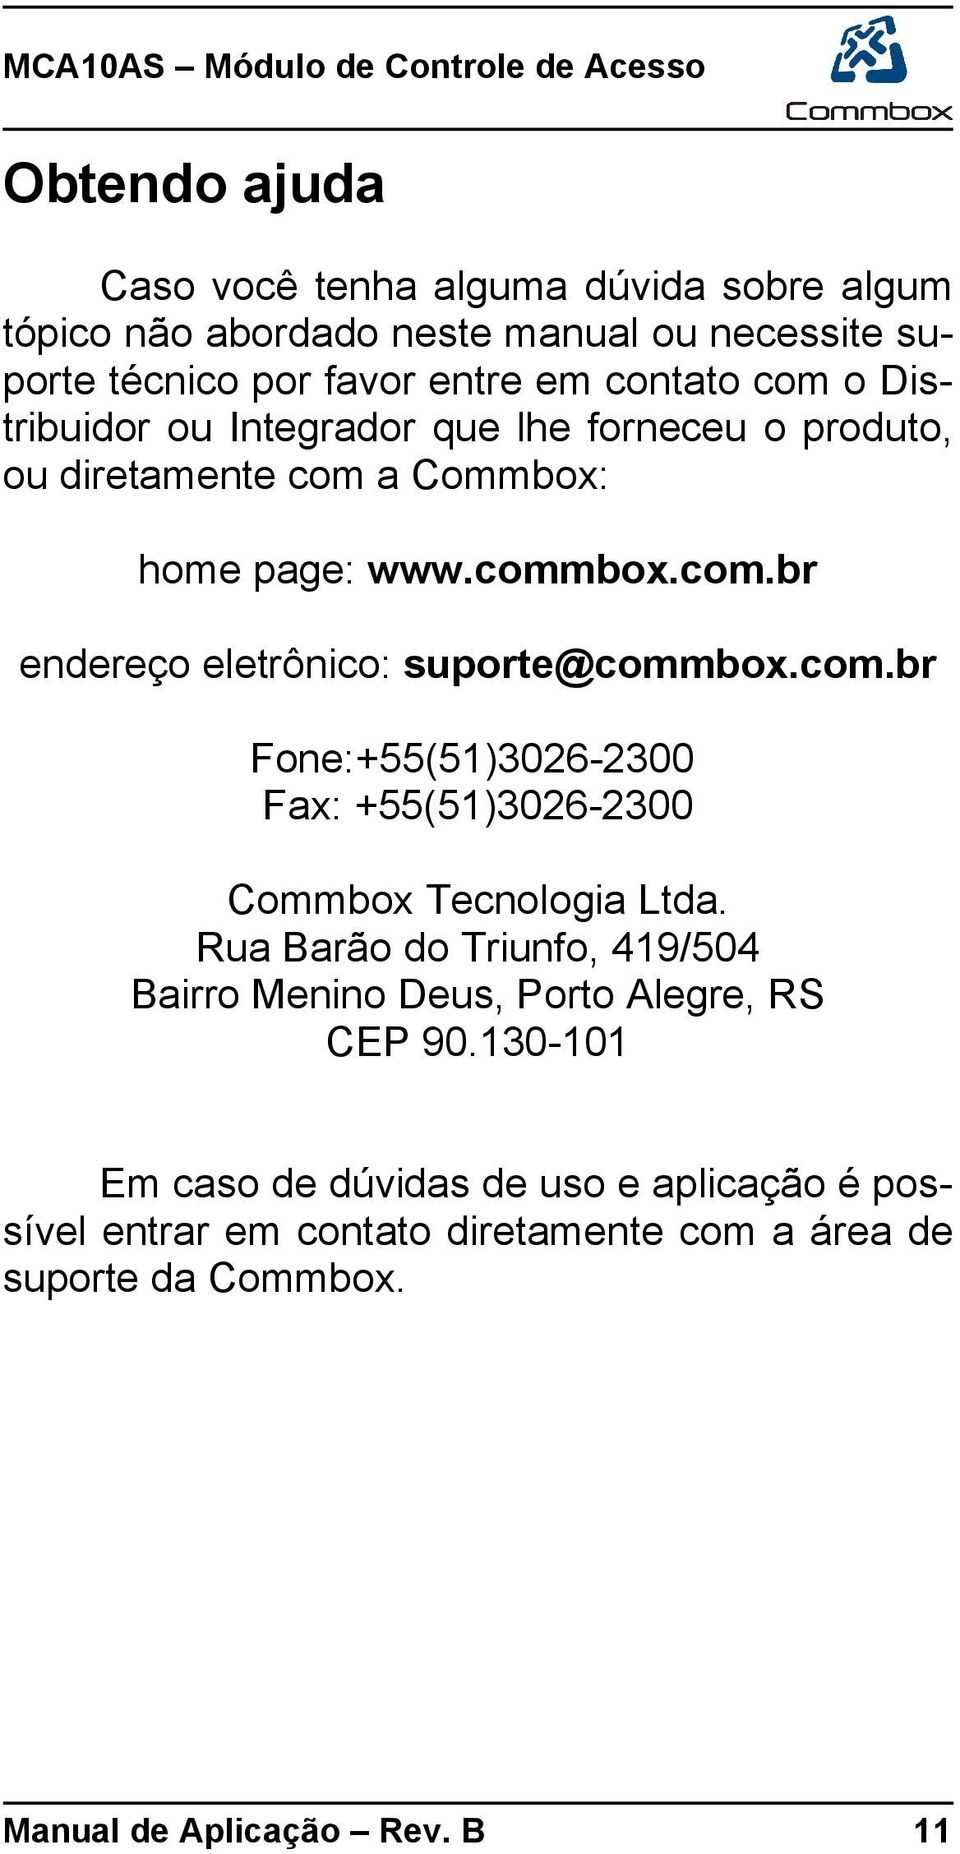 com.br Fone:+55(51)3026-2300 Fax: +55(51)3026-2300 Commbox Tecnologia Ltda. Rua Barão do Triunfo, 419/504 Bairro Menino Deus, Porto Alegre, RS CEP 90.